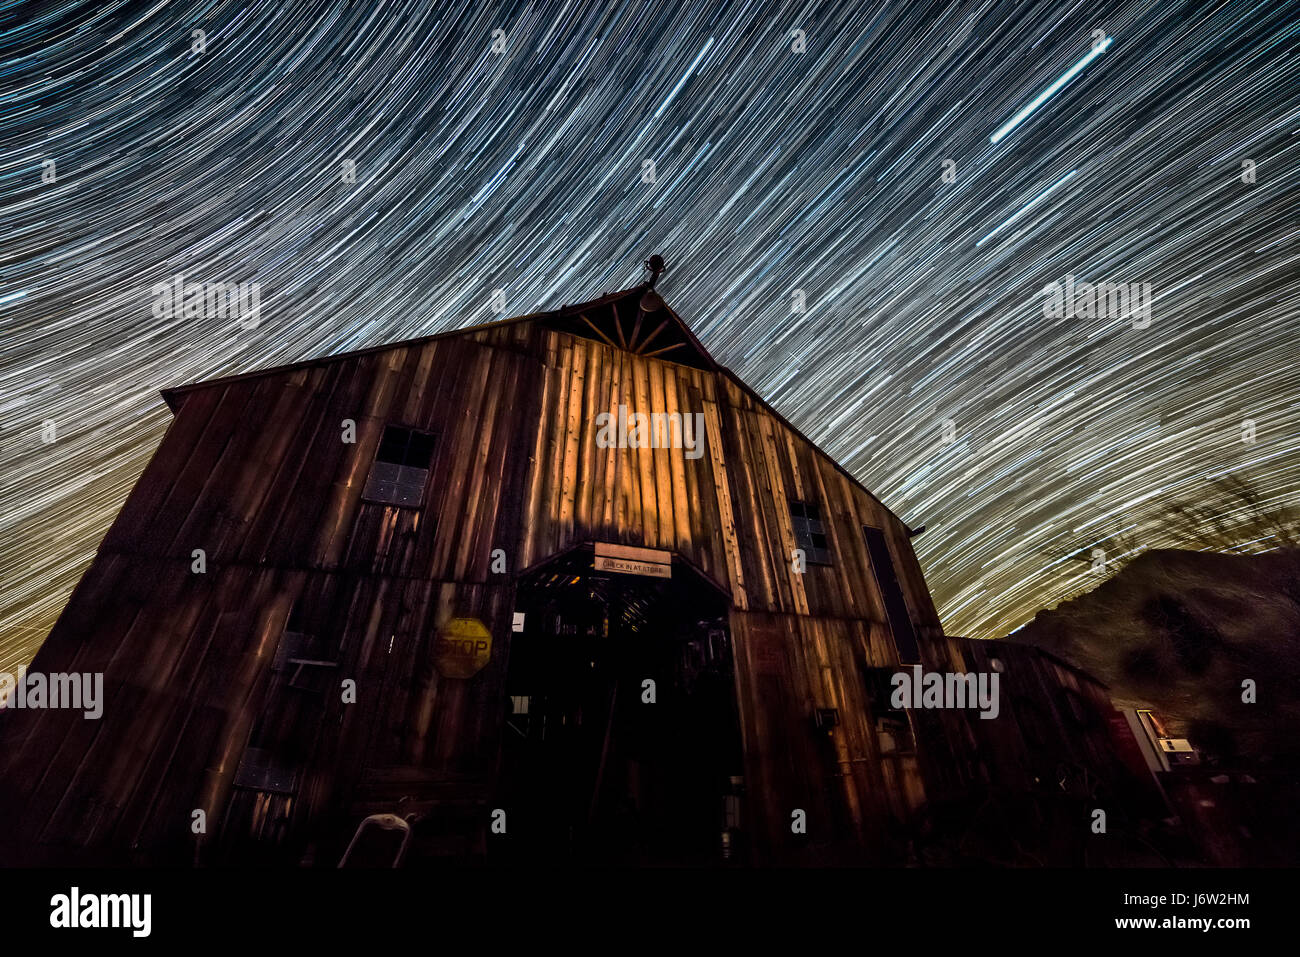 Star trail fotografía captura el camino de las estrellas lejanas sobre un antiguo granero wodden a medida que la tierra gira. Foto de stock